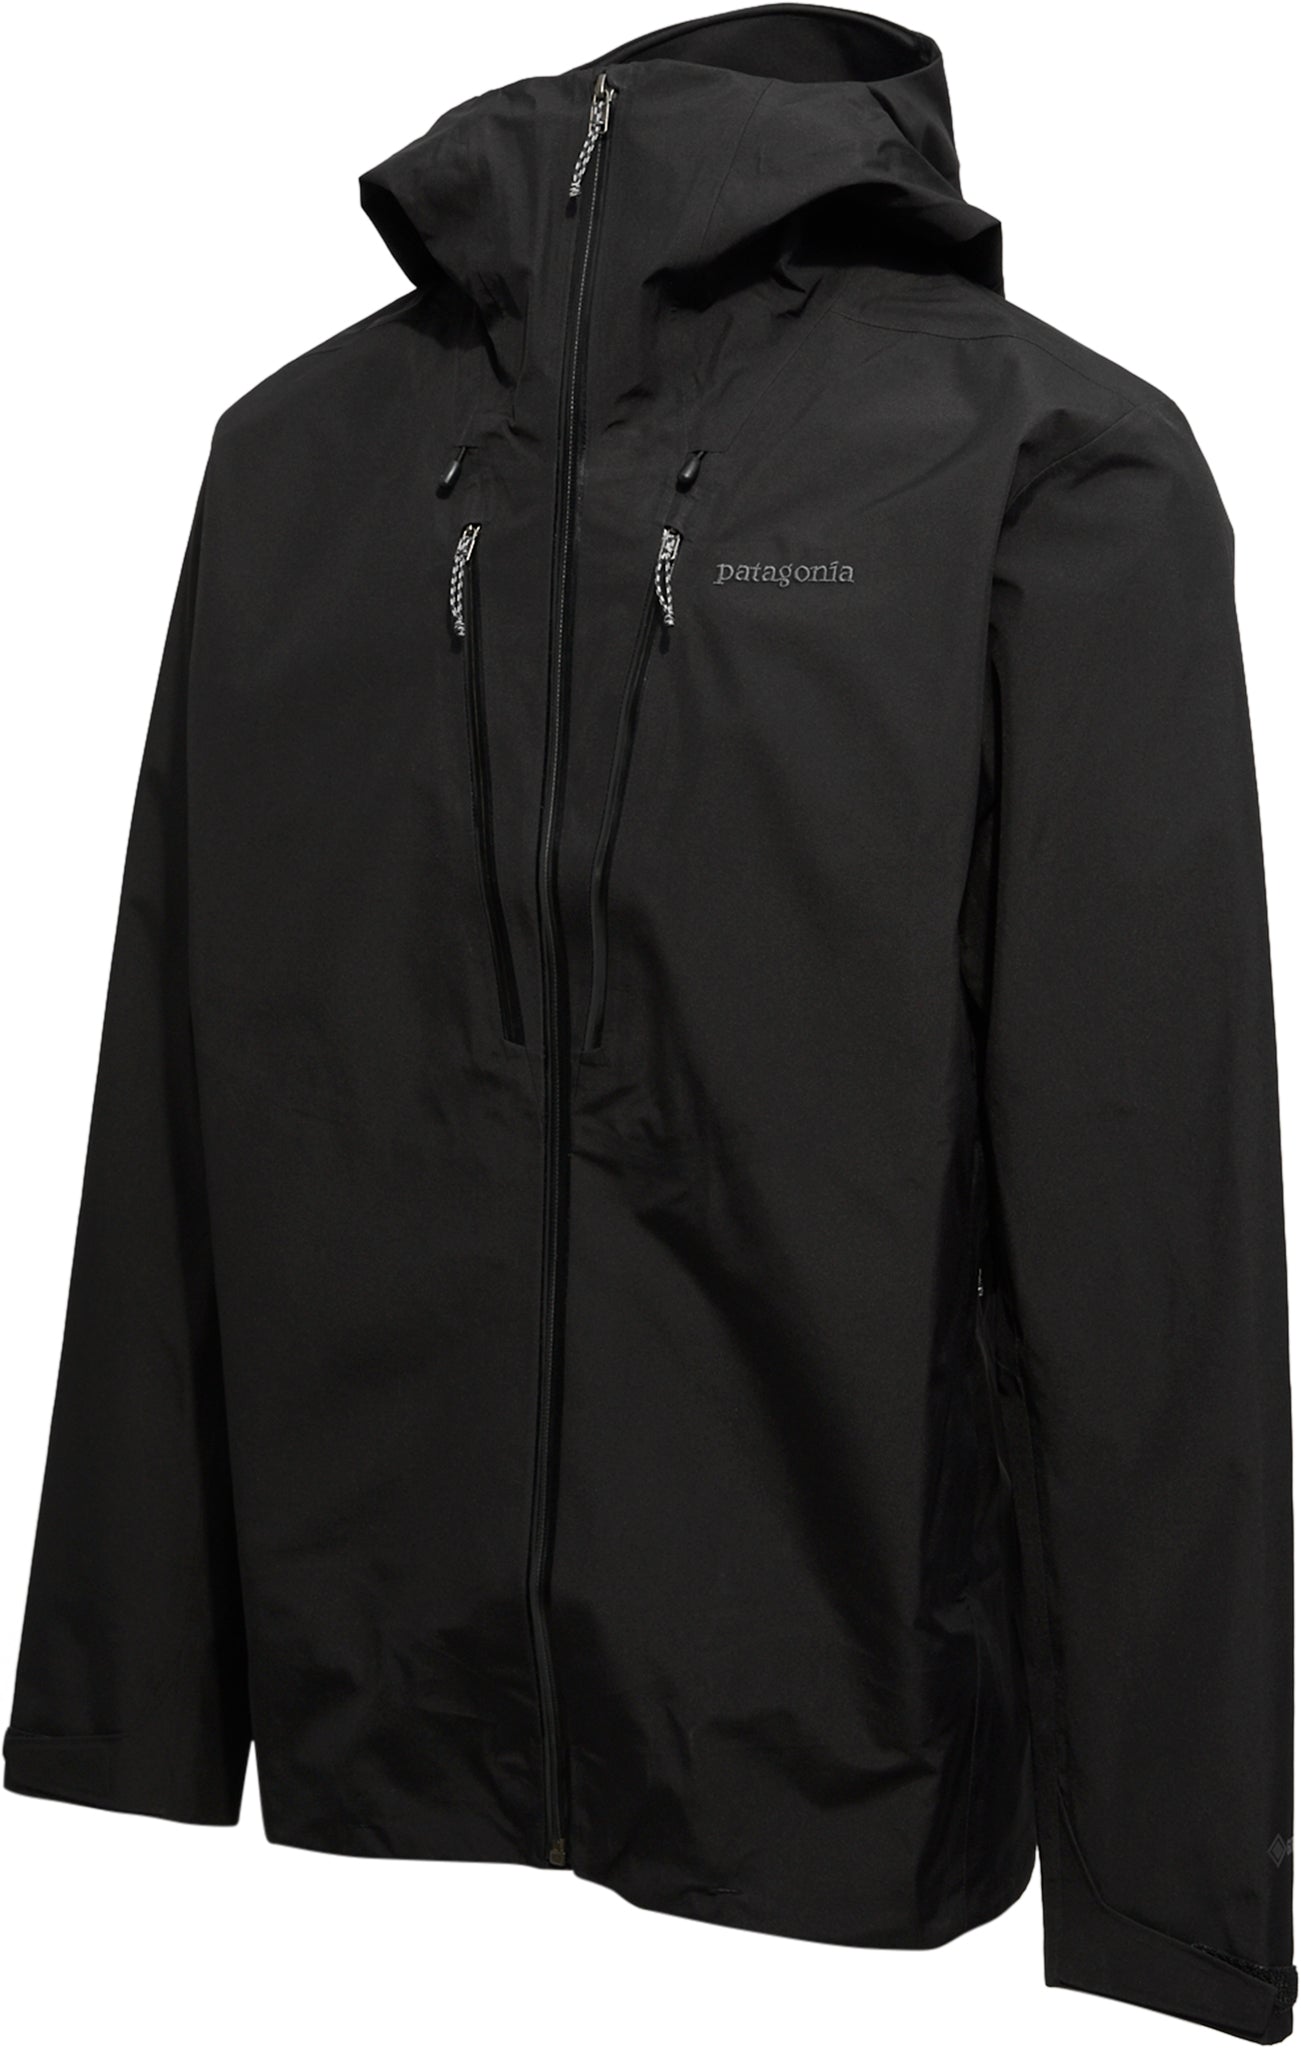 Patagonia Triolet Jacket (Black)